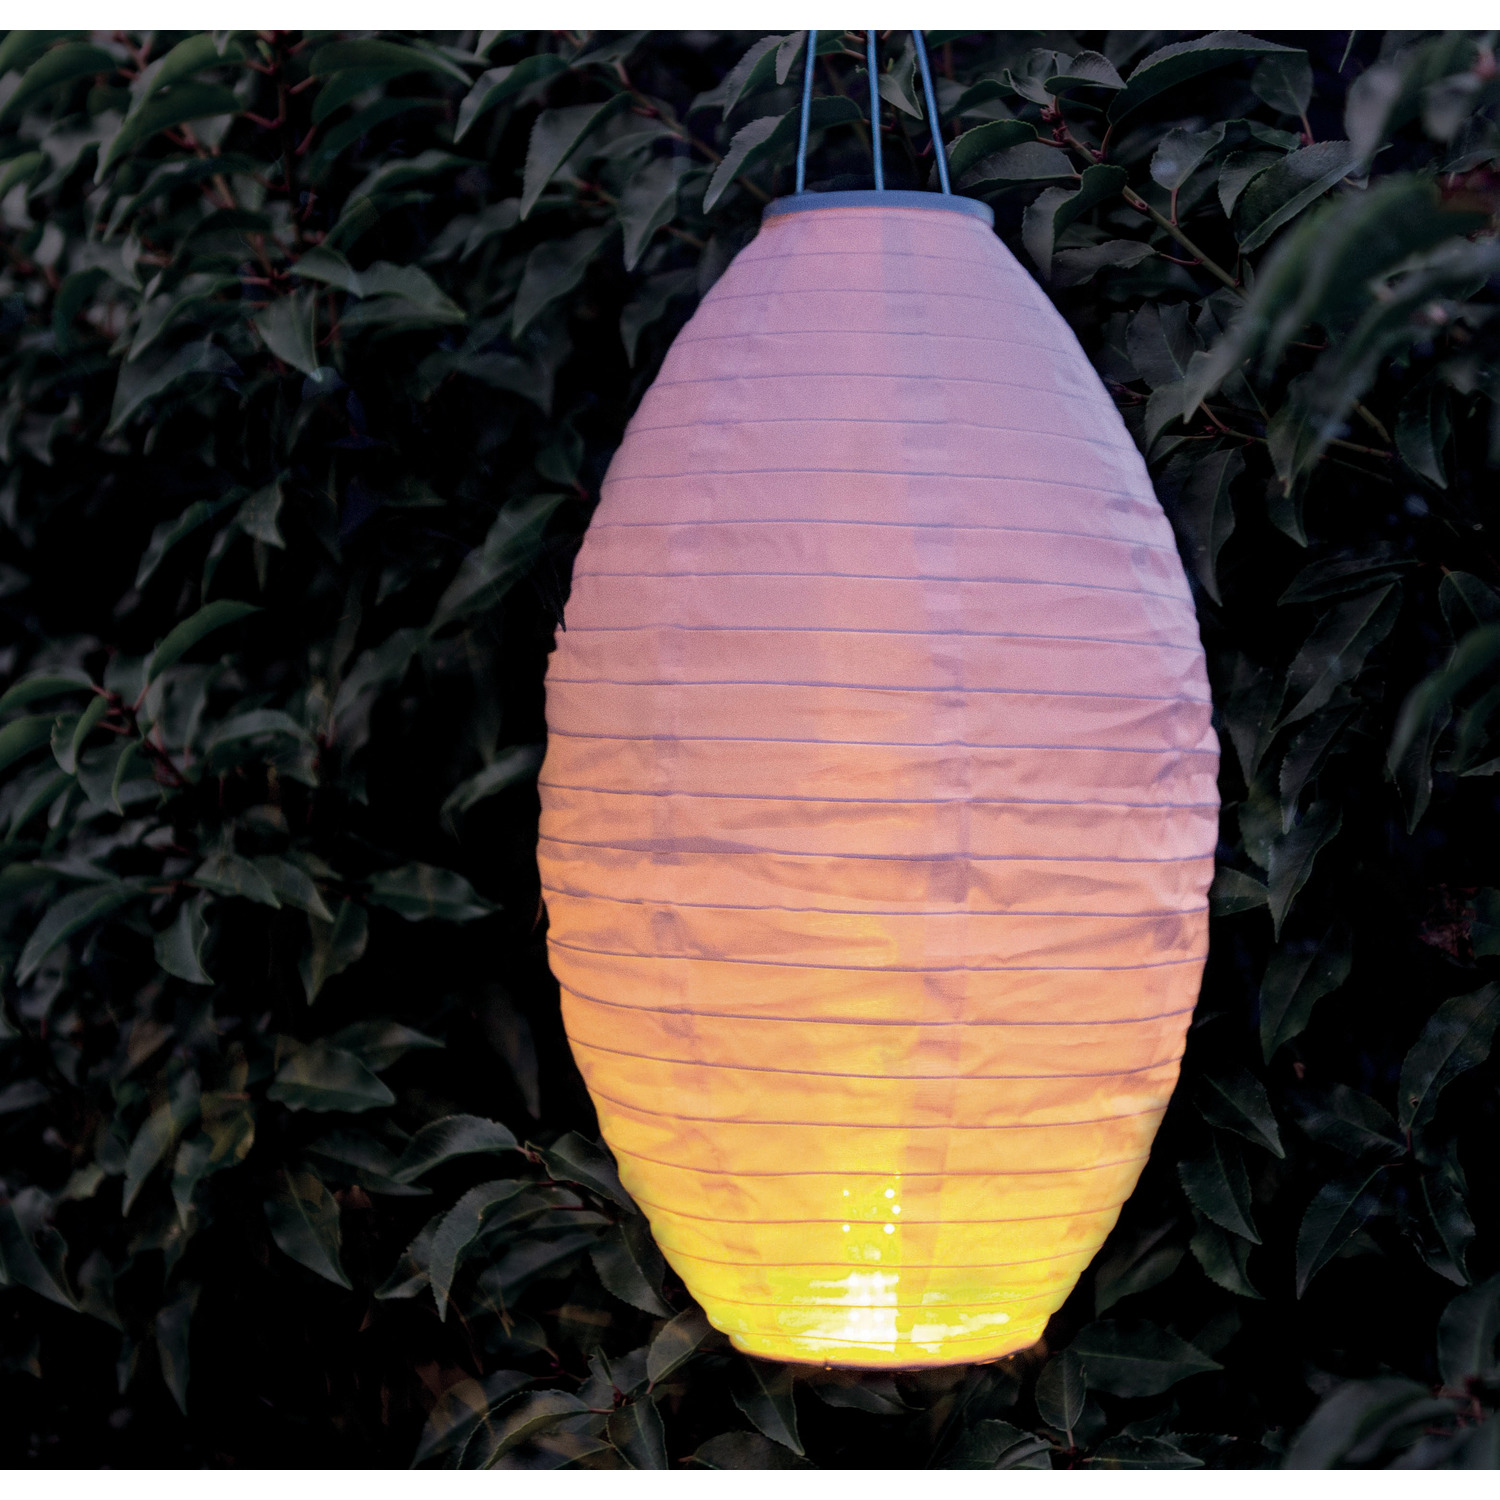 1x stuks luxe solar lampion/lampionnen wit met realistisch vlameffect 30 x 50 cm